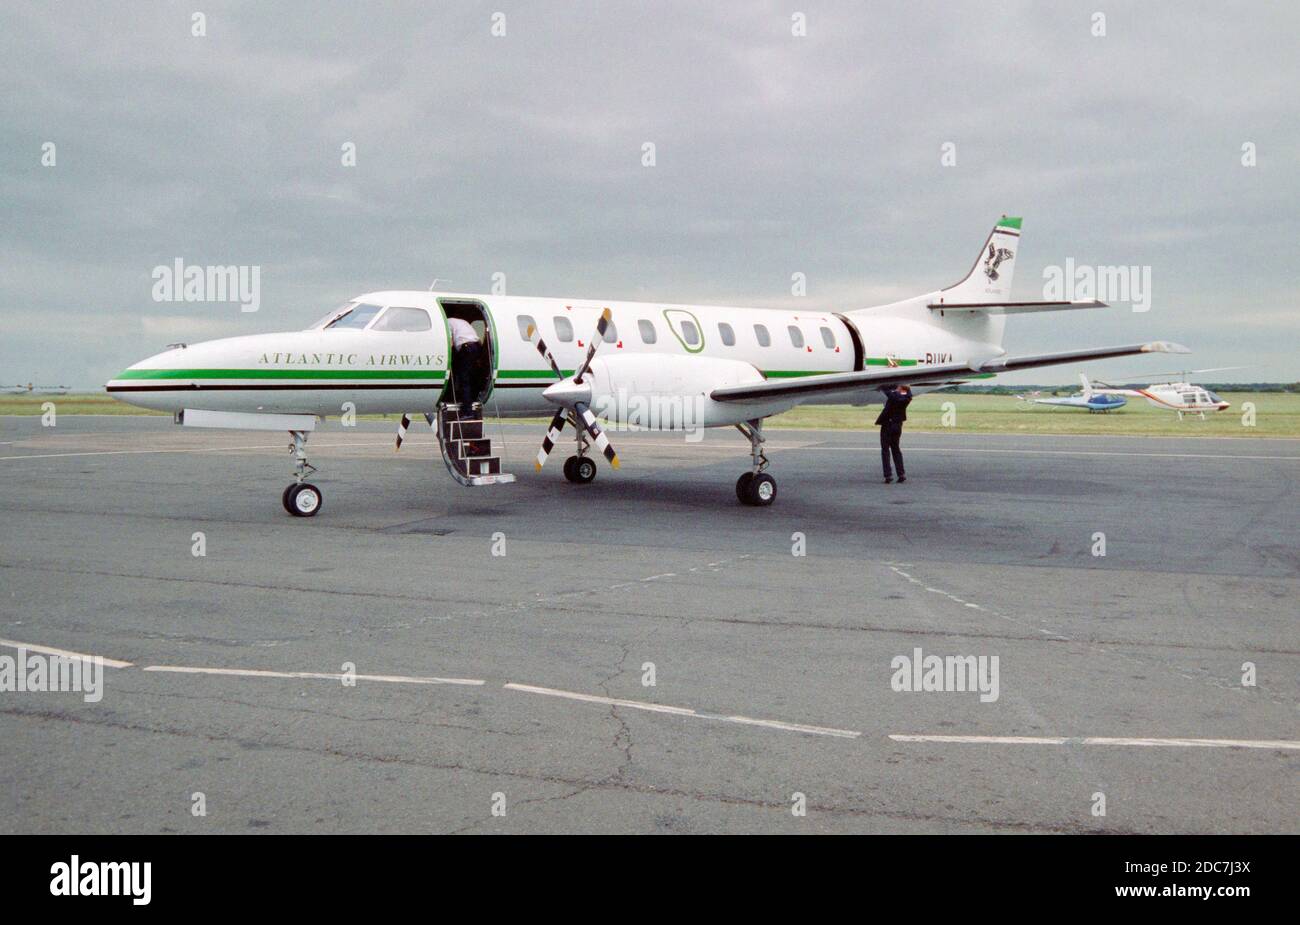 Un aereo di linea per pendolari Atlantic Airways Fairchild Swearingen SA-227 Metro III, registrazione G-BUKA, pronto ad assumere nuovi passeggeri in un aeroporto in Inghilterra nel 2003. Foto Stock